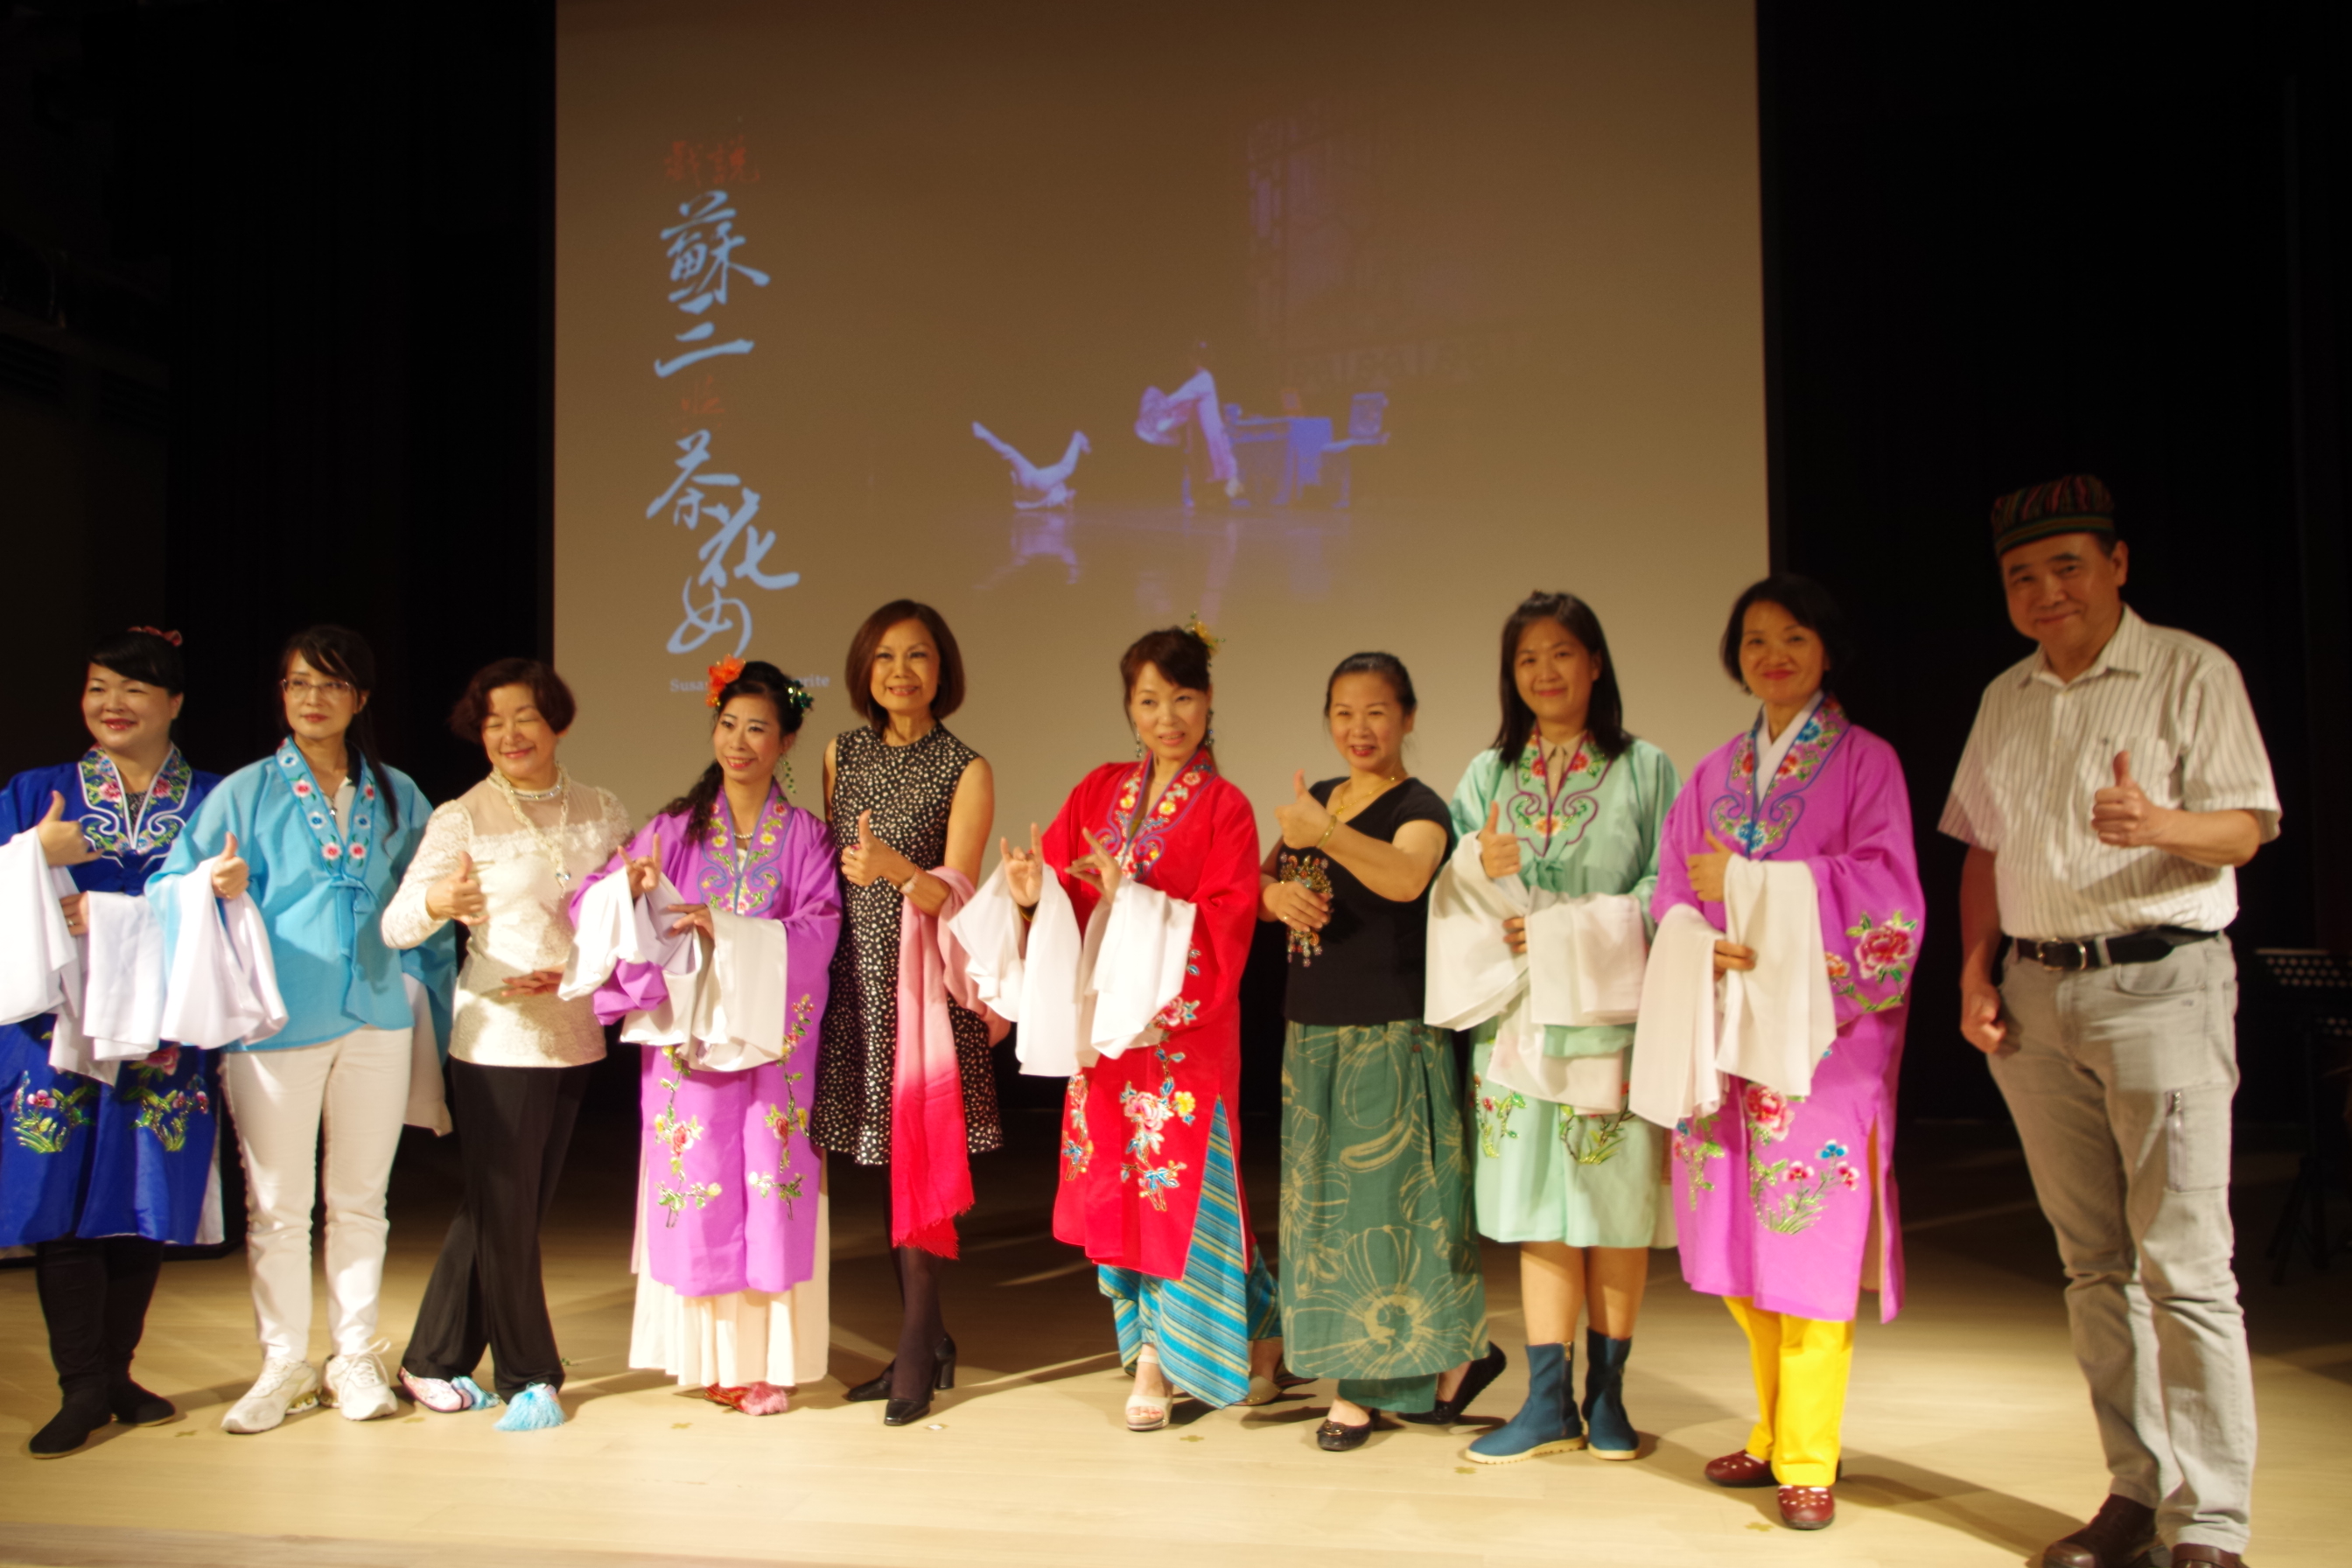 府中15「歌仔戲傳奇三部曲」放映會  臺北傳統戲劇團 創團15年 52歲社區媽媽 再現歌仔戲傳奇